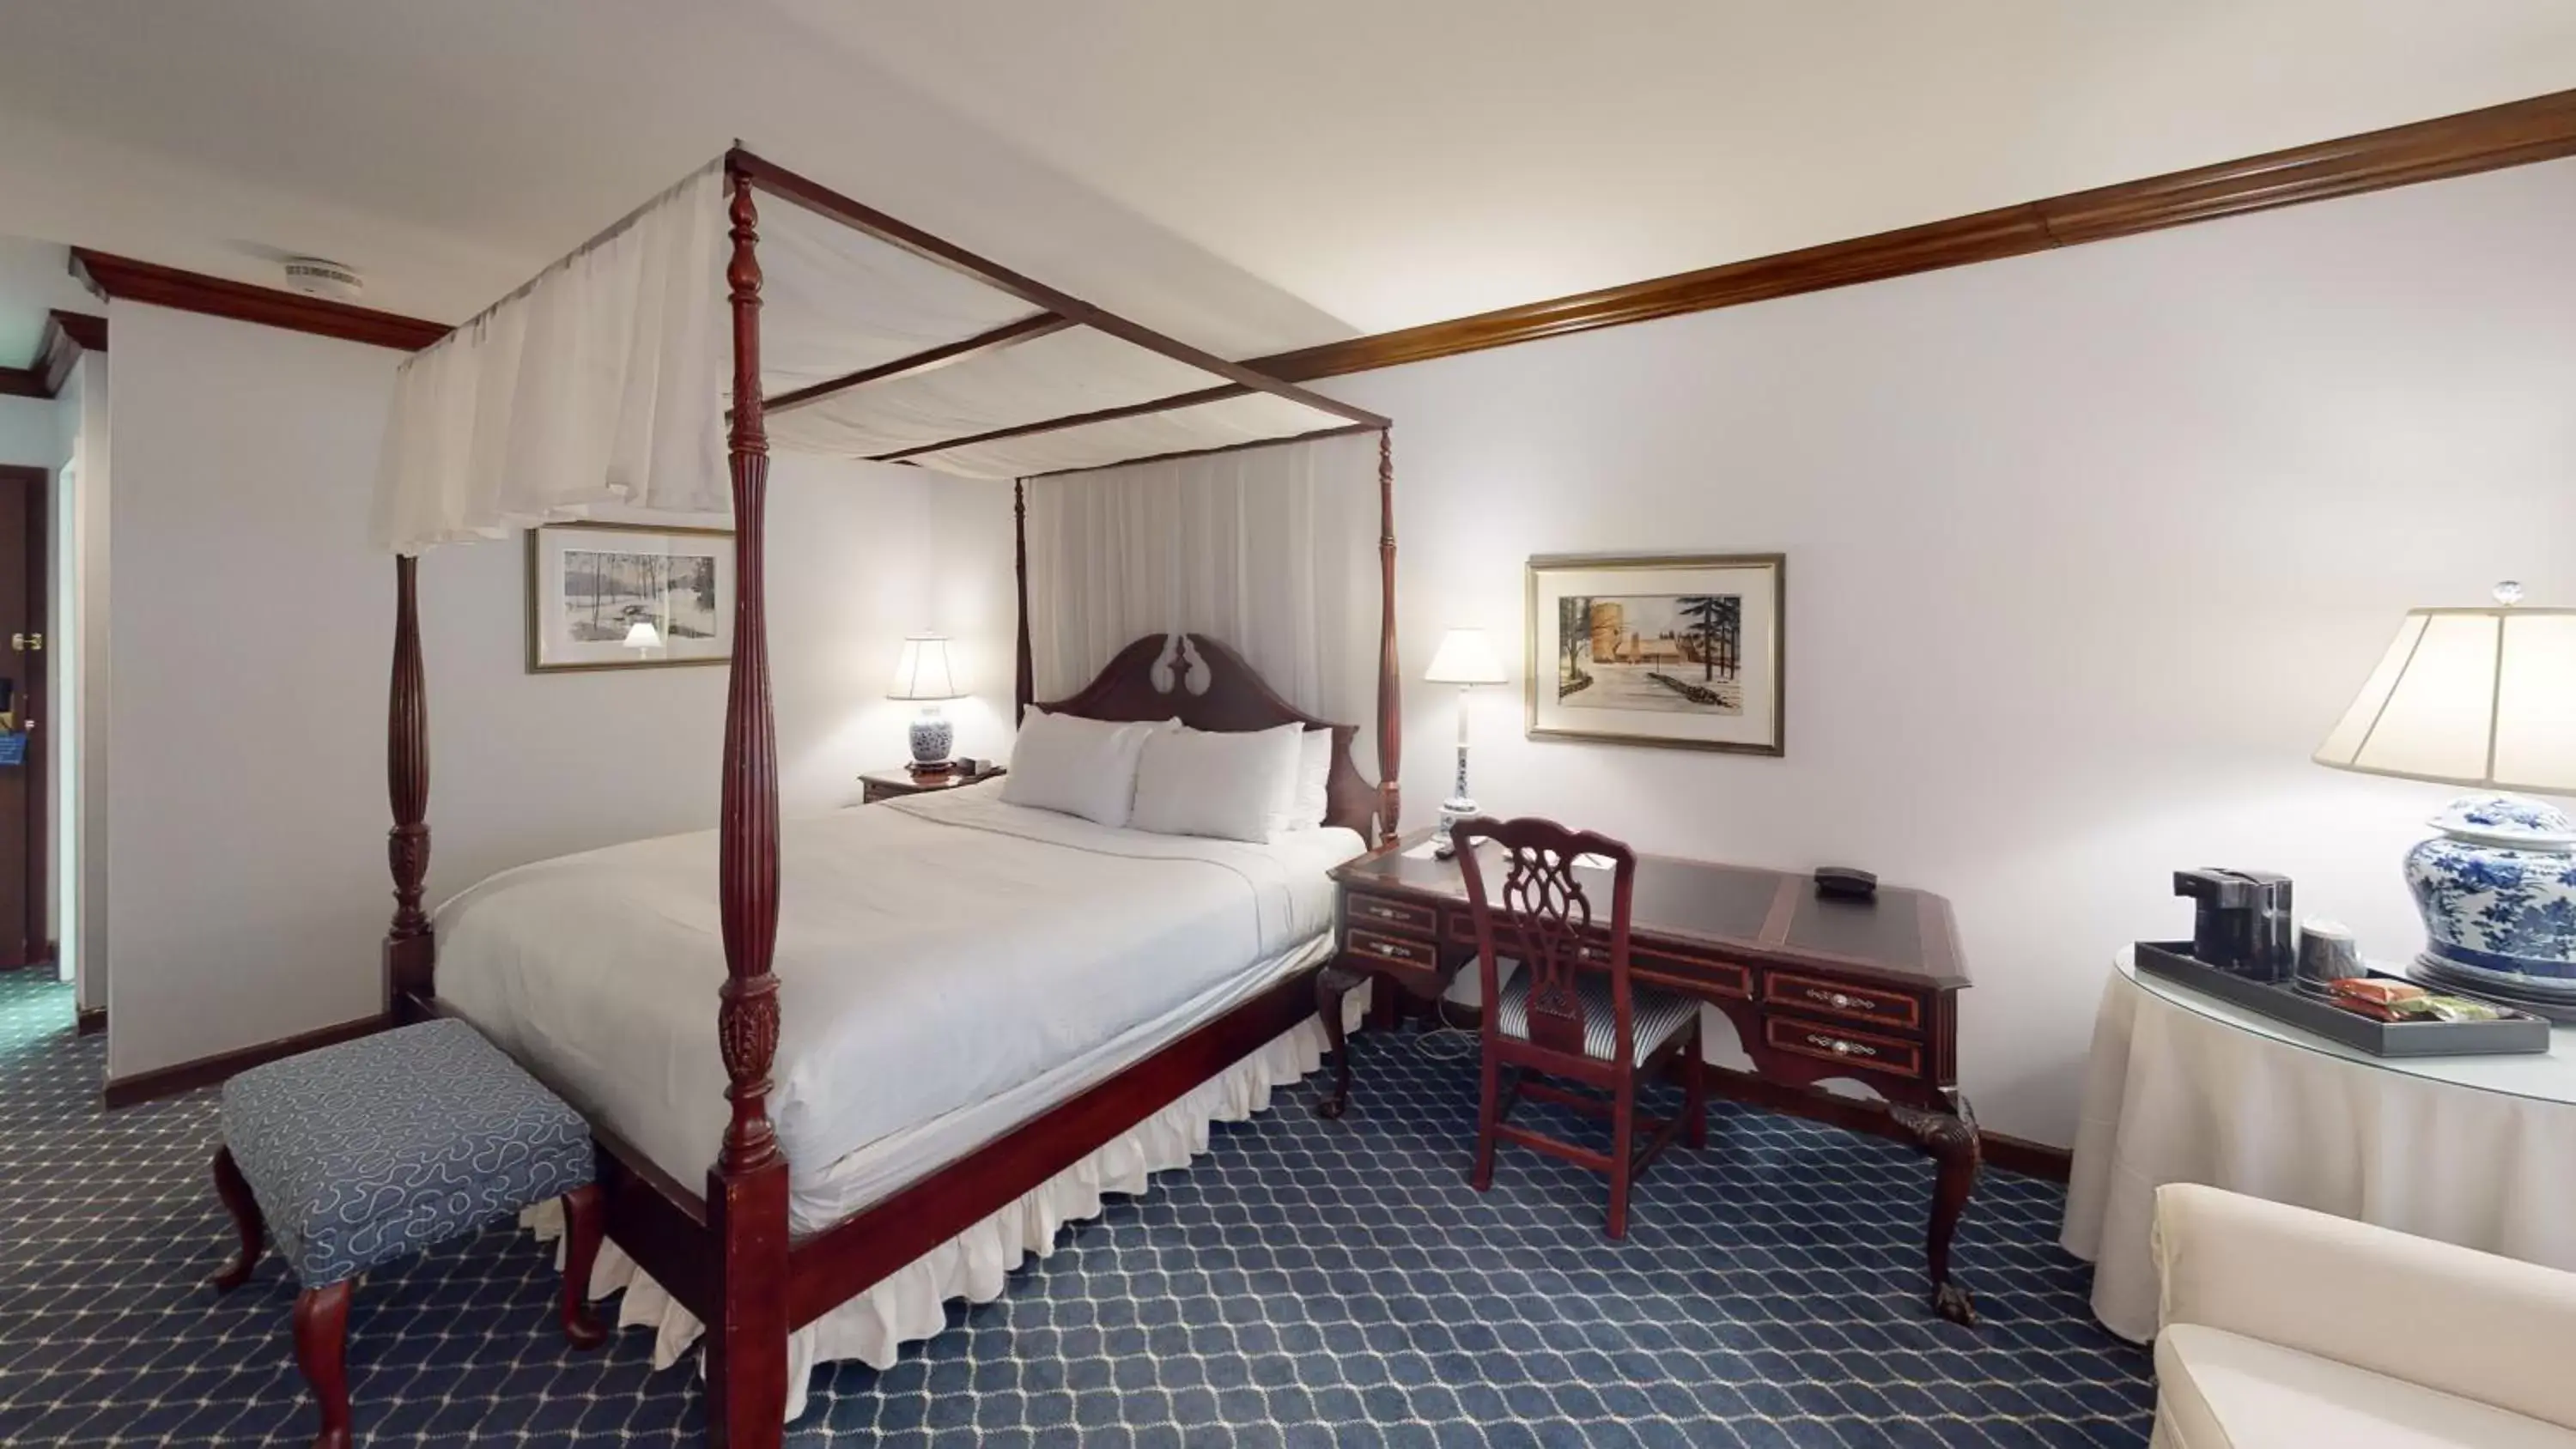 Bedroom in Avon Old Farms Hotel